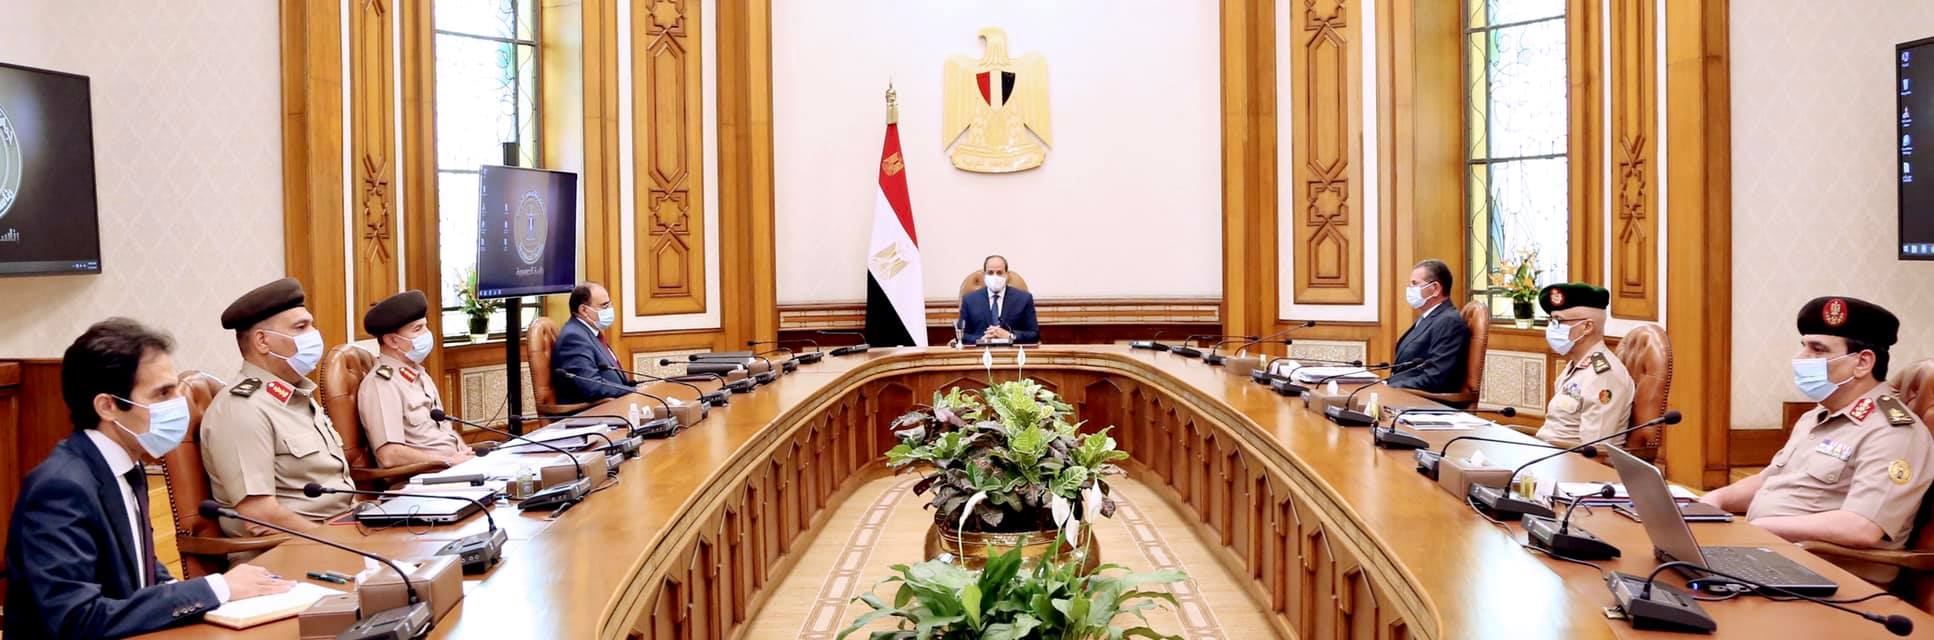   الرئيس السيسى يطلع علي الموقف الانشائي الخاص بمشروعات تنمية سيناء والعاصمة الادارية الجديدة